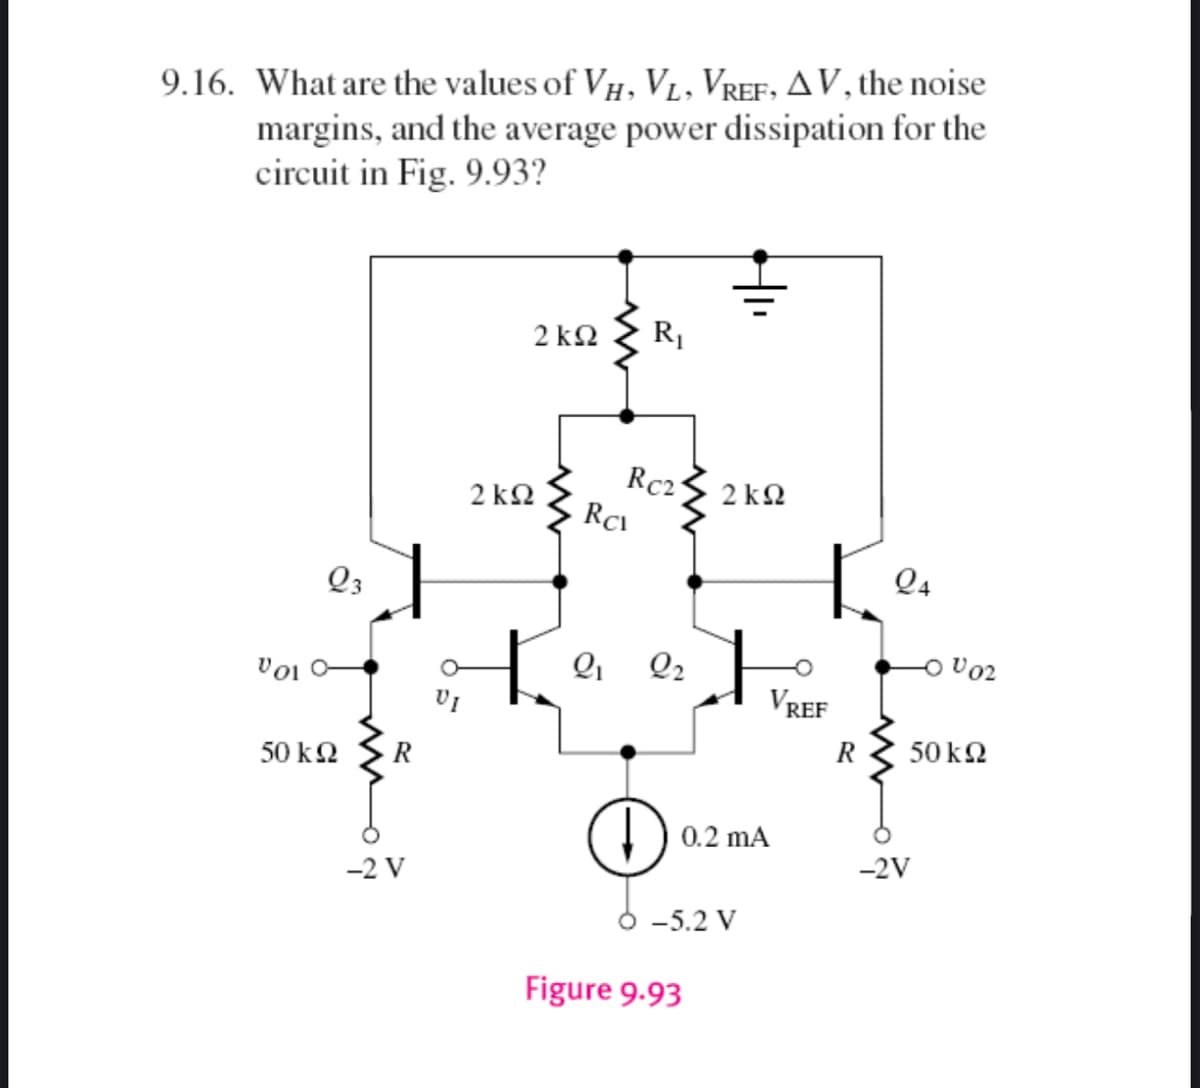 9.16. What are the values of VH, V₁, VREF, AV, the noise
margins, and the average power dissipation for the
circuit in Fig. 9.93?
2kQ2
R₁
Rc21
2kQ2
Vol
Q3
50 ΚΩ
R
-2 V
2kQ2
H
Rc
2₁
2₂
↓
Figure 9.93
+
0.2 mA
-5.2 V
VREF
24
-2V
-0002
50 ΚΩ